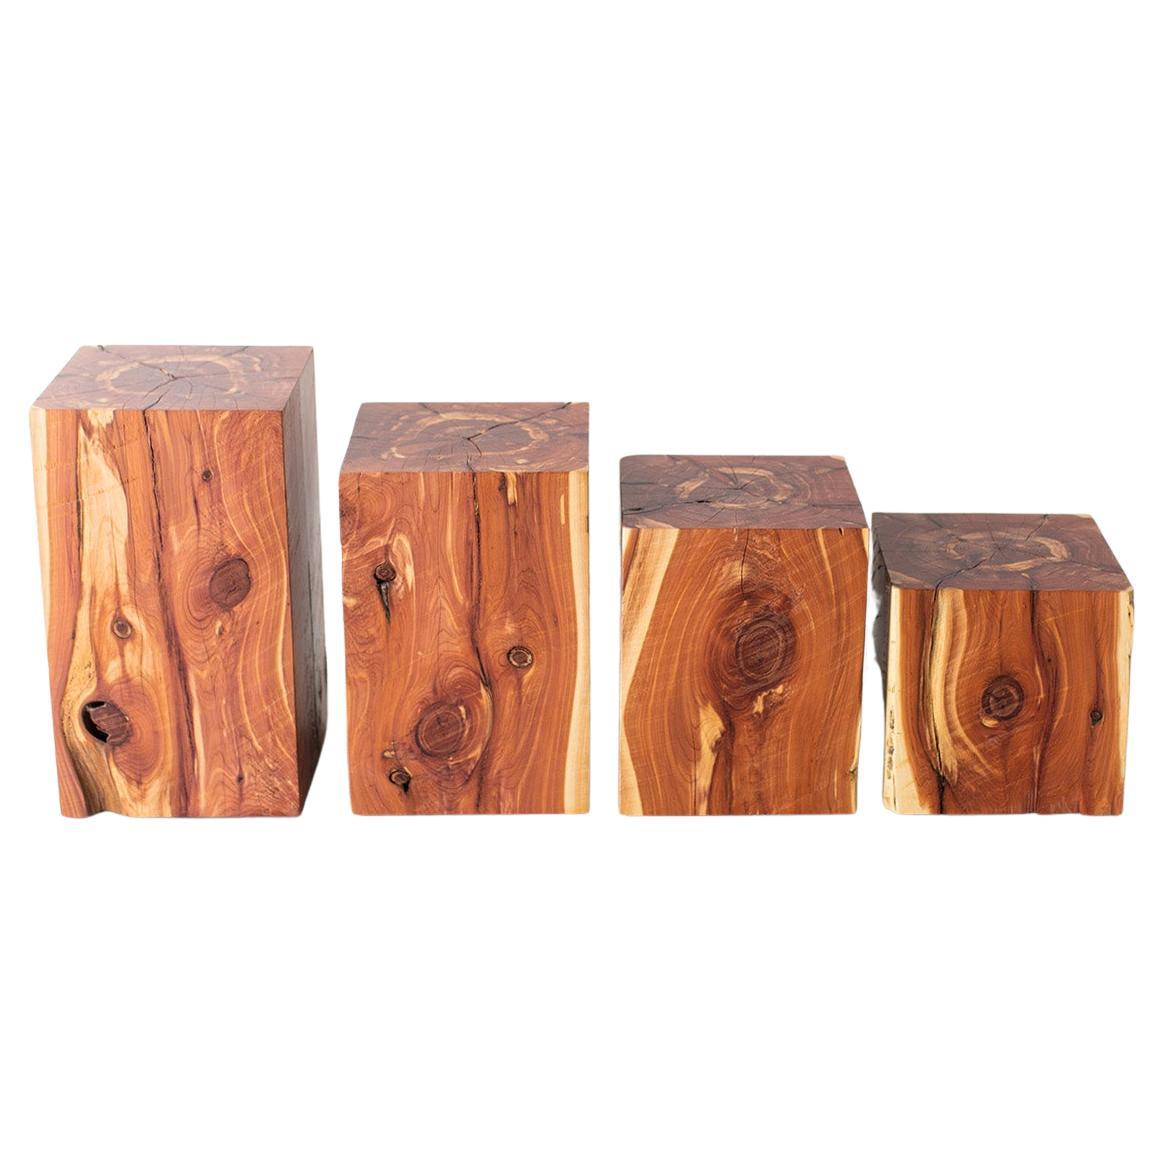 Tables d'appoint en bois de Bertu, tables d'appoint en bois de cèdre rouge pour l'extérieur